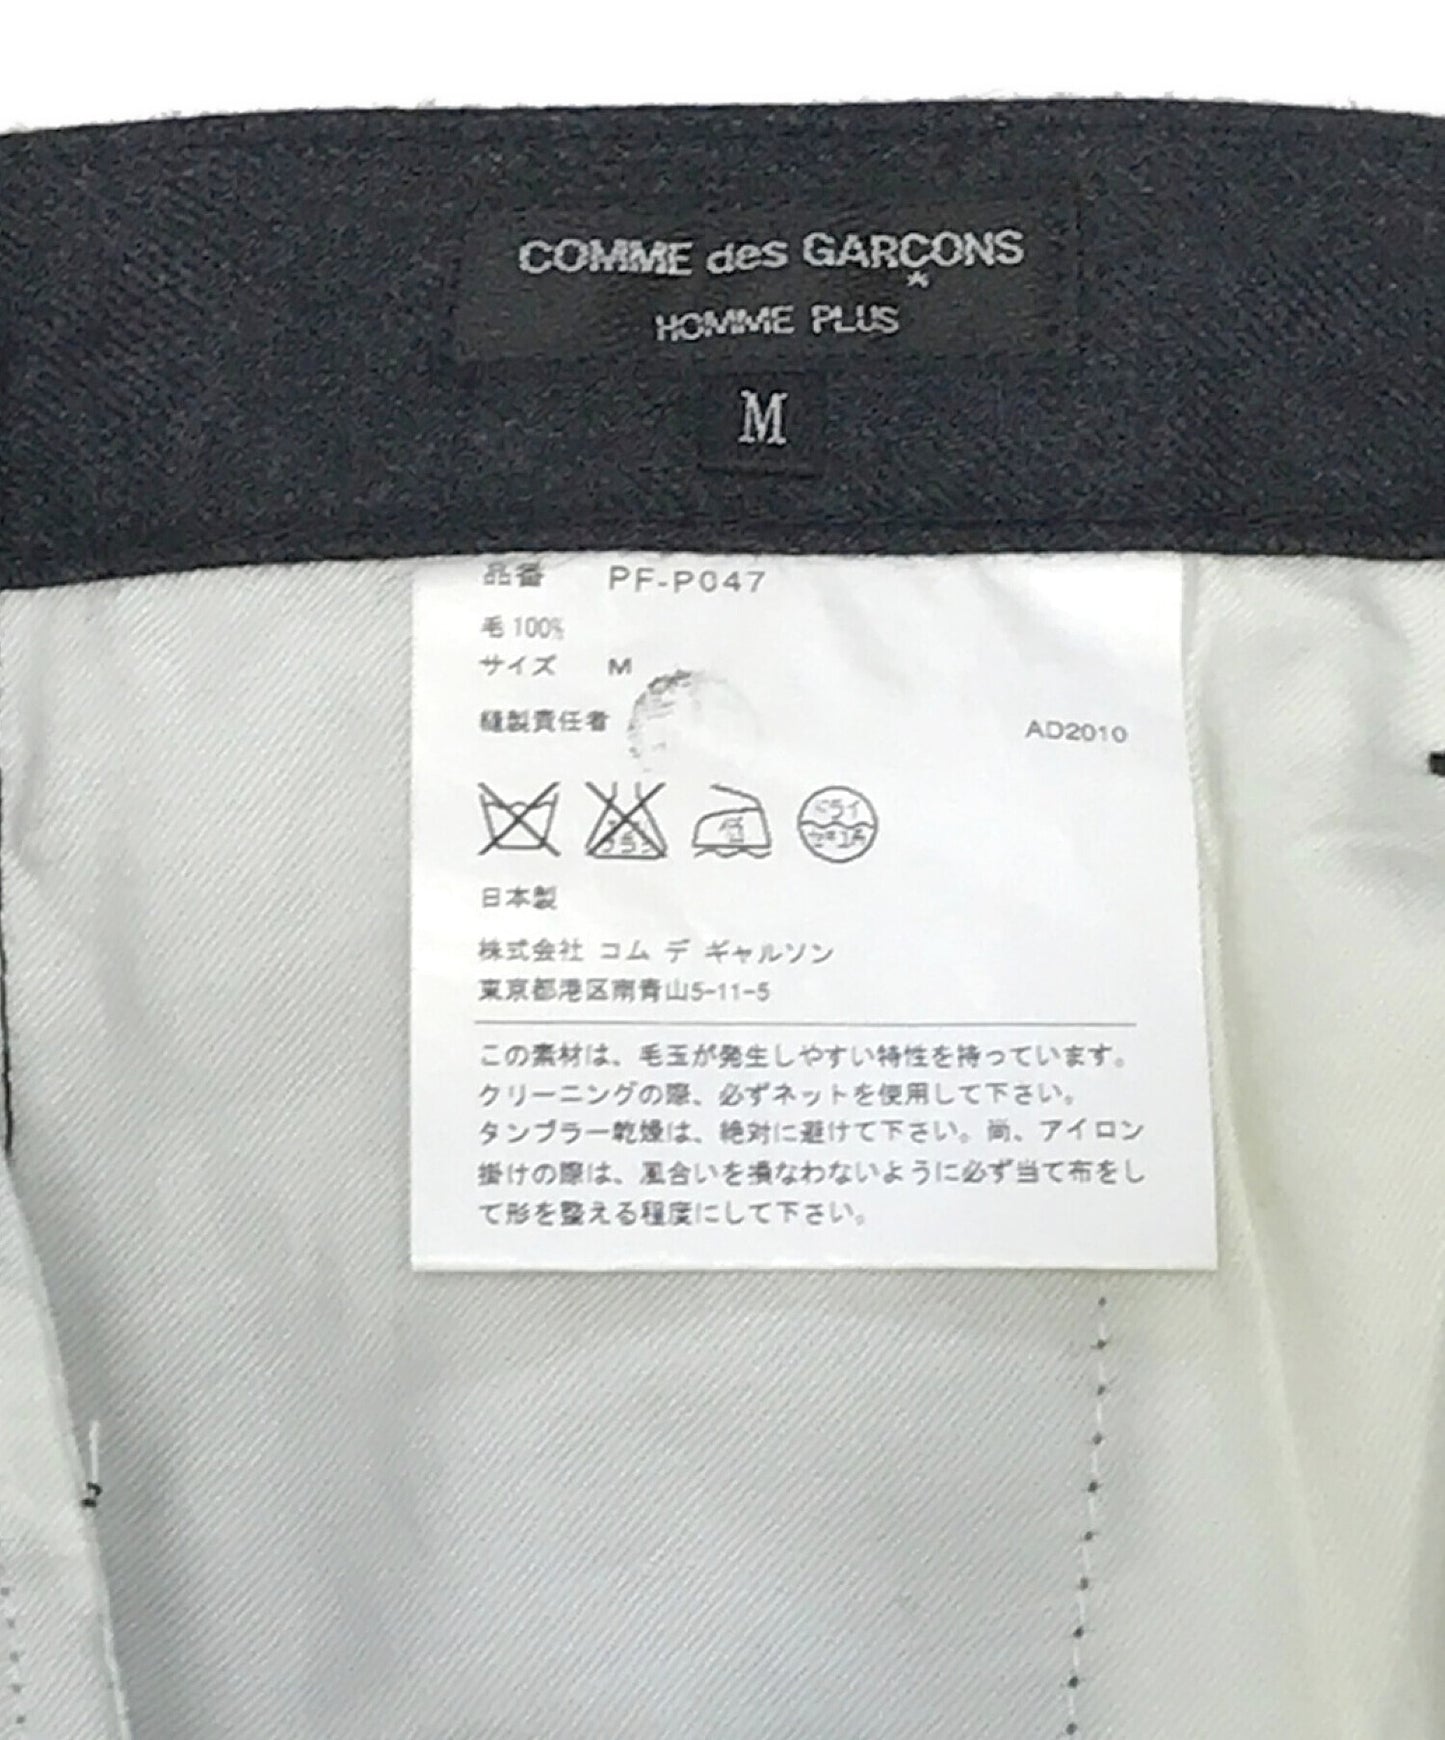 [Pre-owned] COMME des GARCONS Homme Plus wool slacks PF-P047